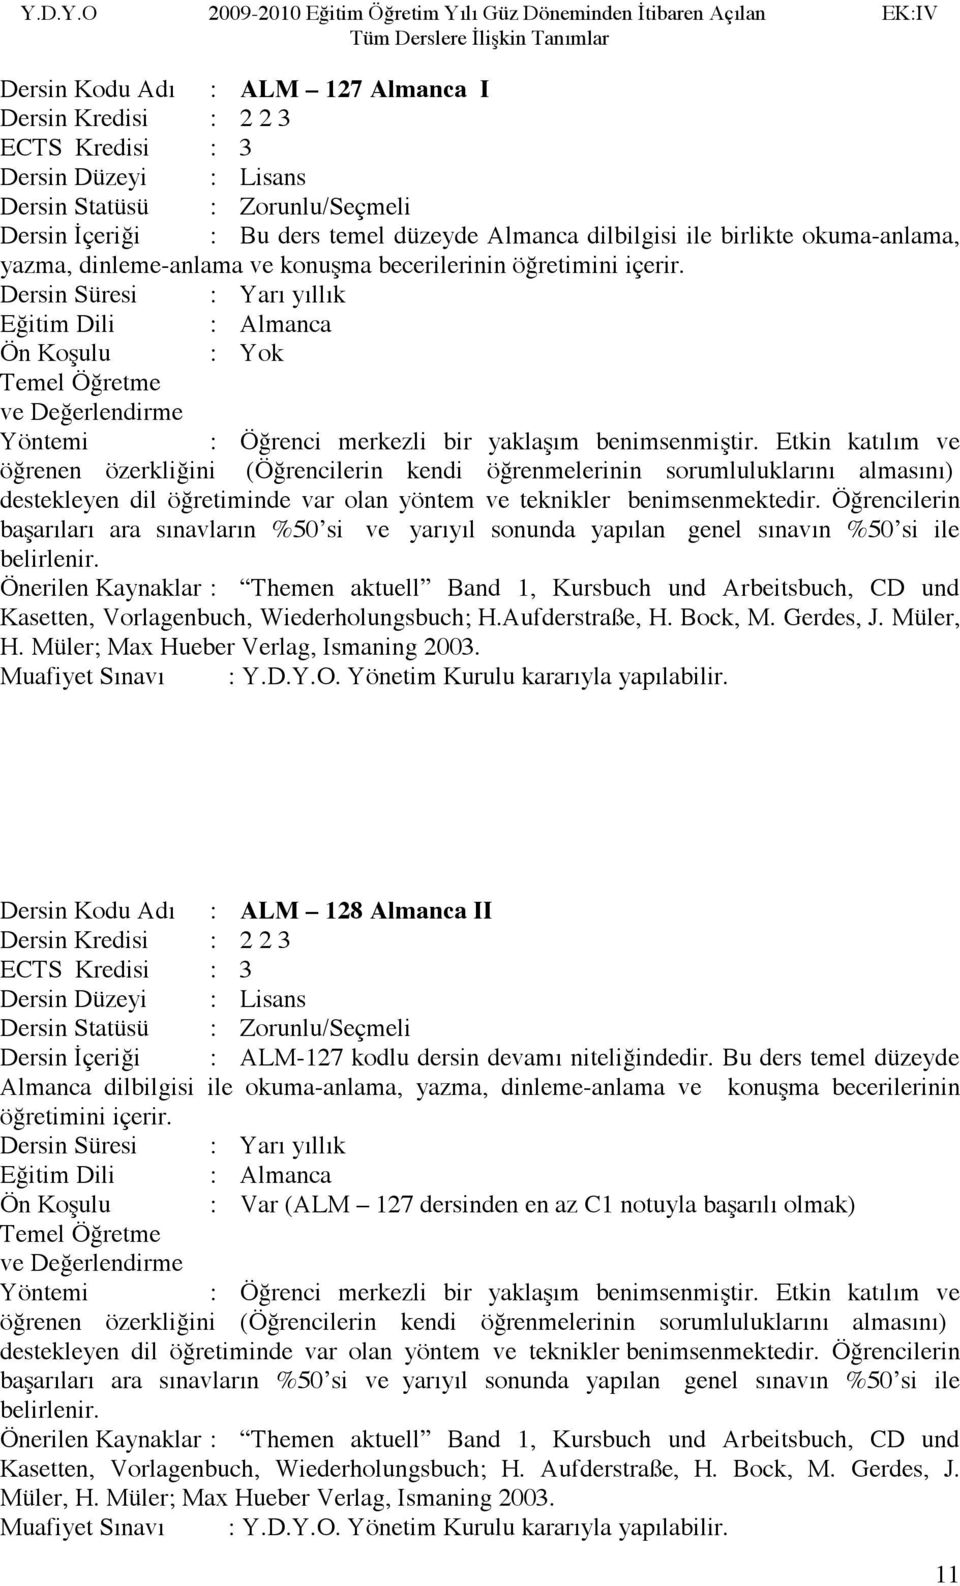 Önerilen Kaynaklar : Themen aktuell Band 1, Kursbuch und Arbeitsbuch, CD und Kasetten, Vorlagenbuch, Wiederholungsbuch; H.Aufderstraße, H. Bock, M. Gerdes, J. Müler, H.